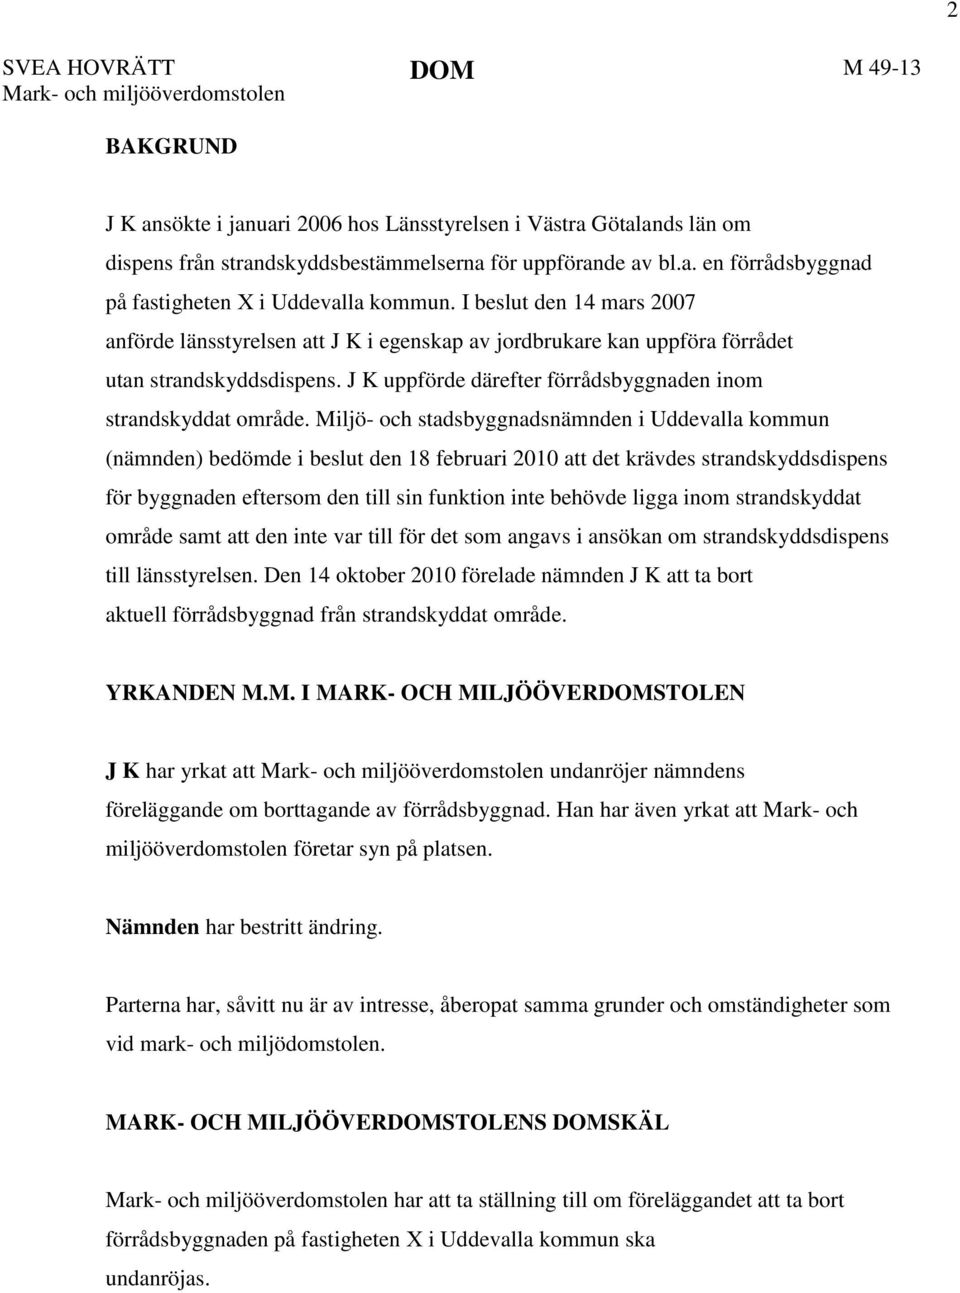 Miljö- och stadsbyggnadsnämnden i Uddevalla kommun (nämnden) bedömde i beslut den 18 februari 2010 att det krävdes strandskyddsdispens för byggnaden eftersom den till sin funktion inte behövde ligga